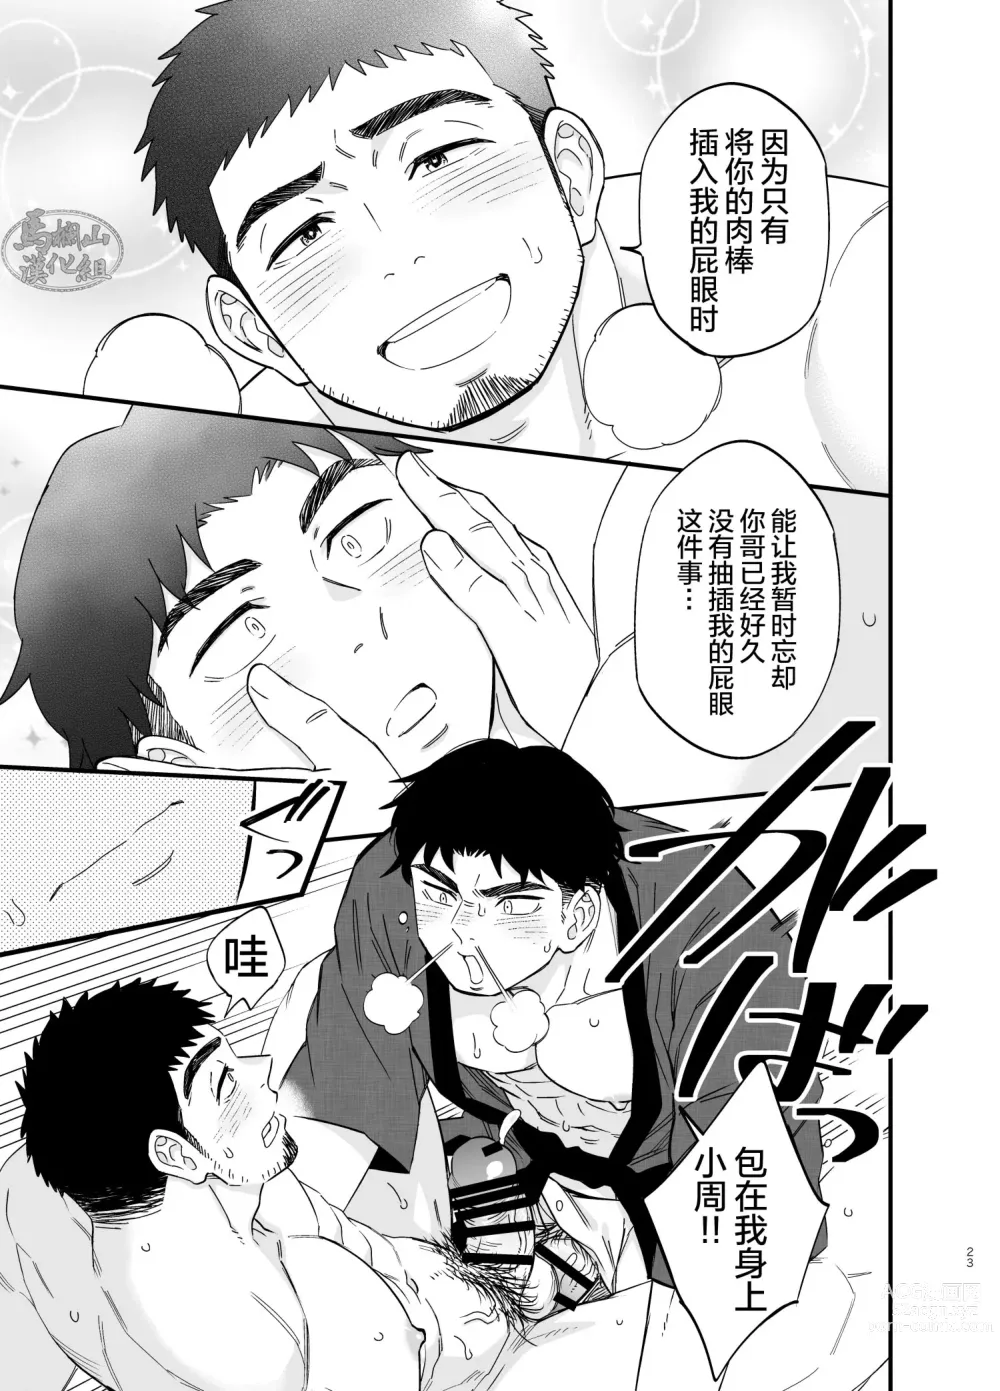 Page 24 of manga 穴